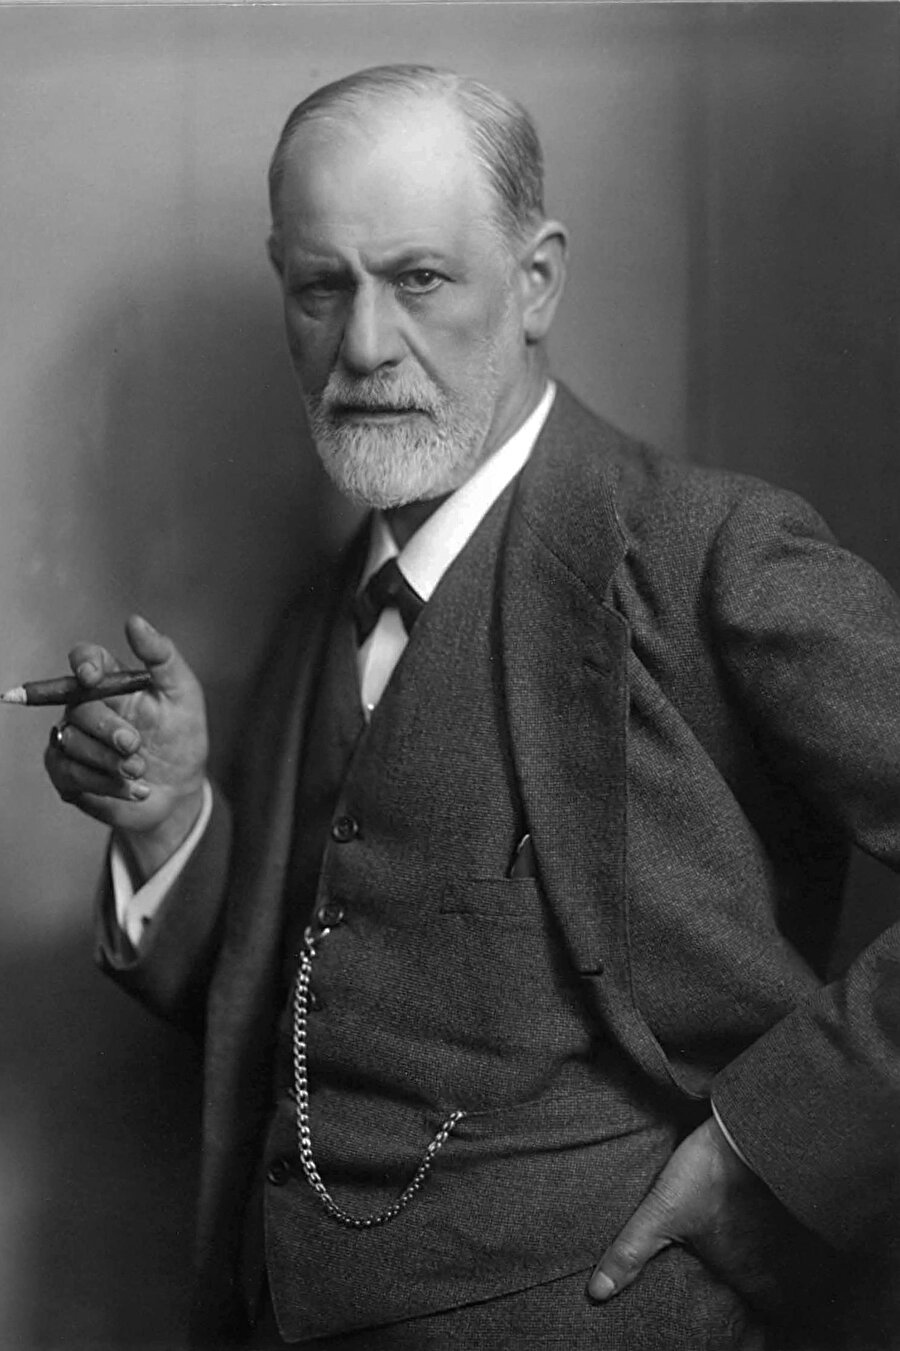 Psikolojiyi karakterize eden, ona bir varoluş sebebi veren ve en önemli, bazı yönlerden düzenleyici nitelik taşıyan bir insan bilimi olarak kalmasını sağlayan şey Freud’un bilinçaltını keşfetmesi oldu.